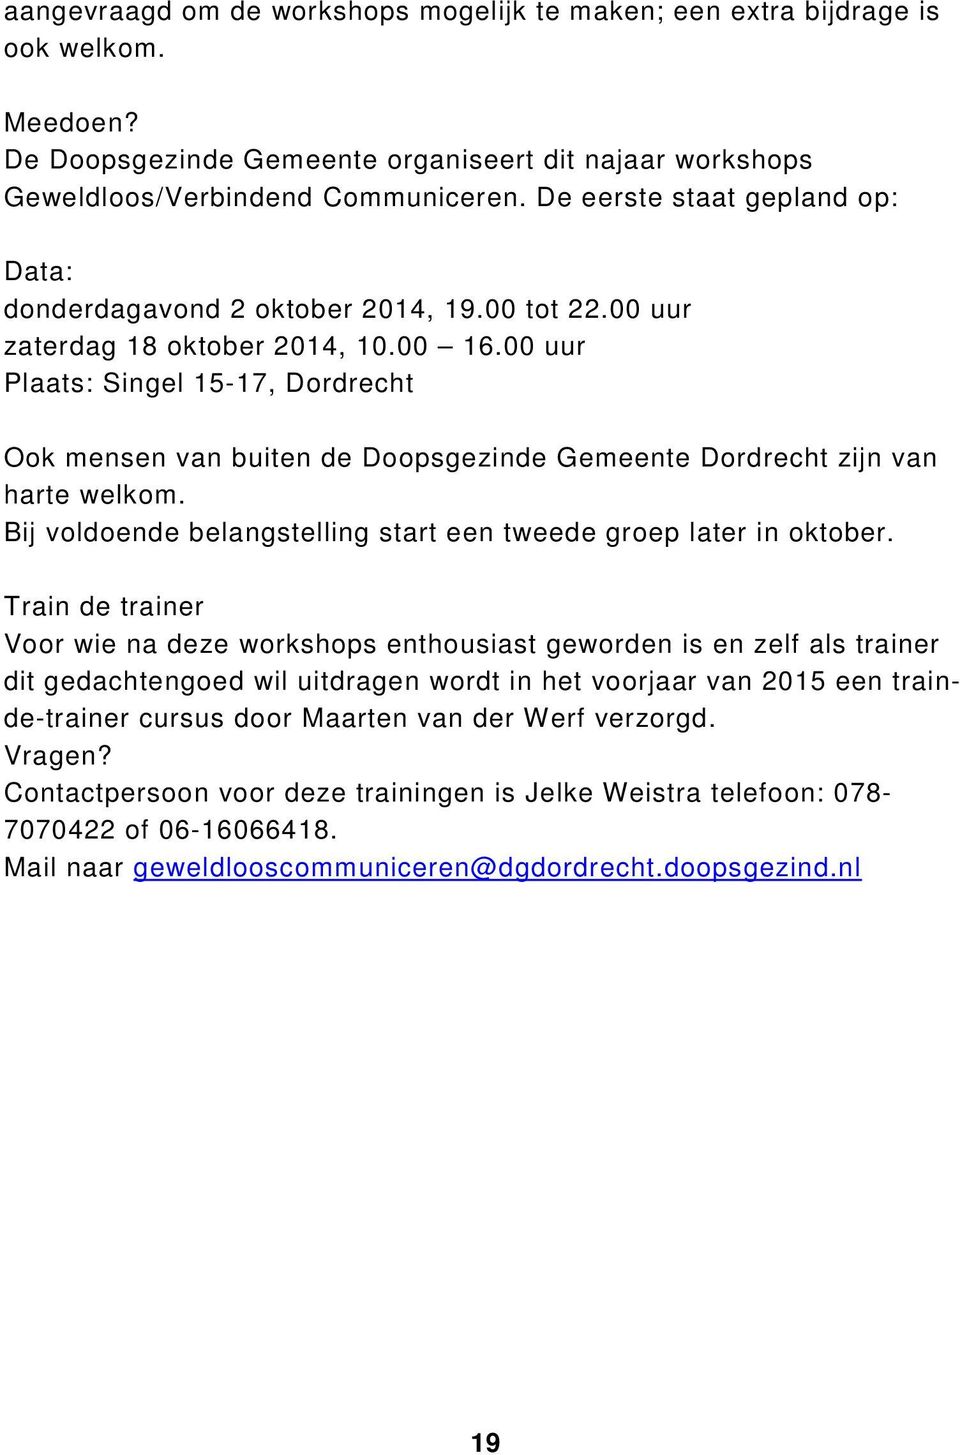 00 uur Plaats: Singel 15-17, Dordrecht Ook mensen van buiten de Doopsgezinde Gemeente Dordrecht zijn van harte welkom. Bij voldoende belangstelling start een tweede groep later in oktober.